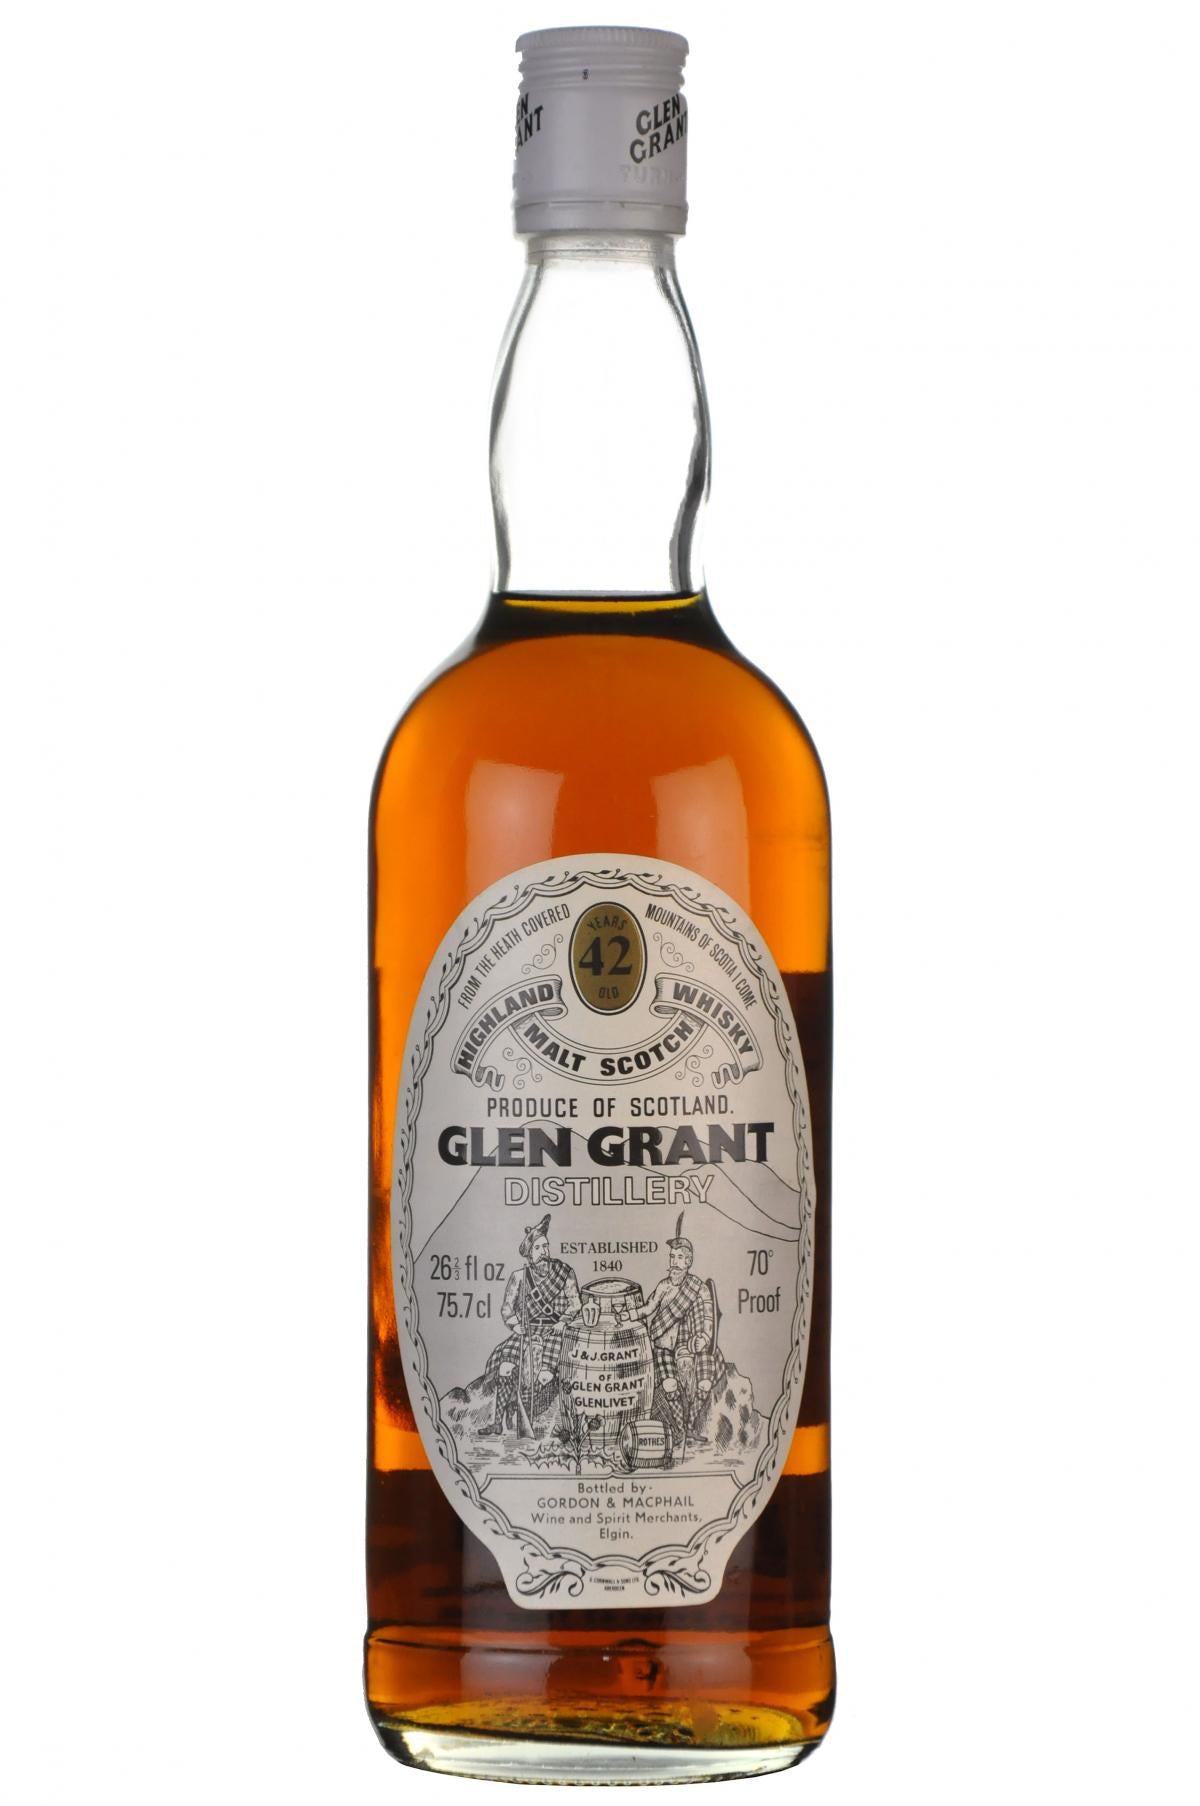 glen grant 42 year old, bottled by gordon and macphail, speyside single malt scotch whisky whiskey